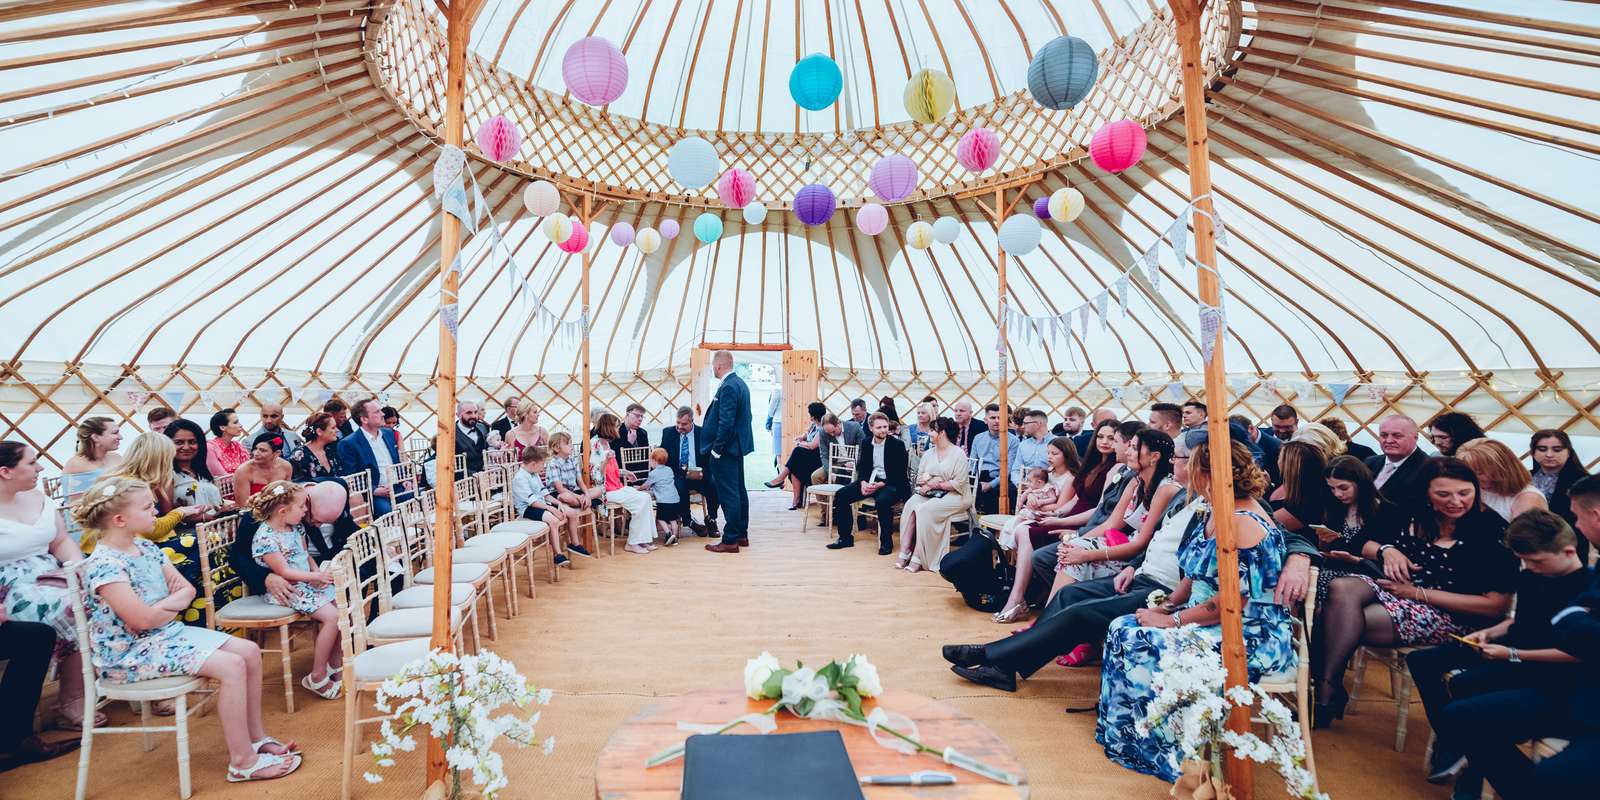 Stunning yurt ceremony